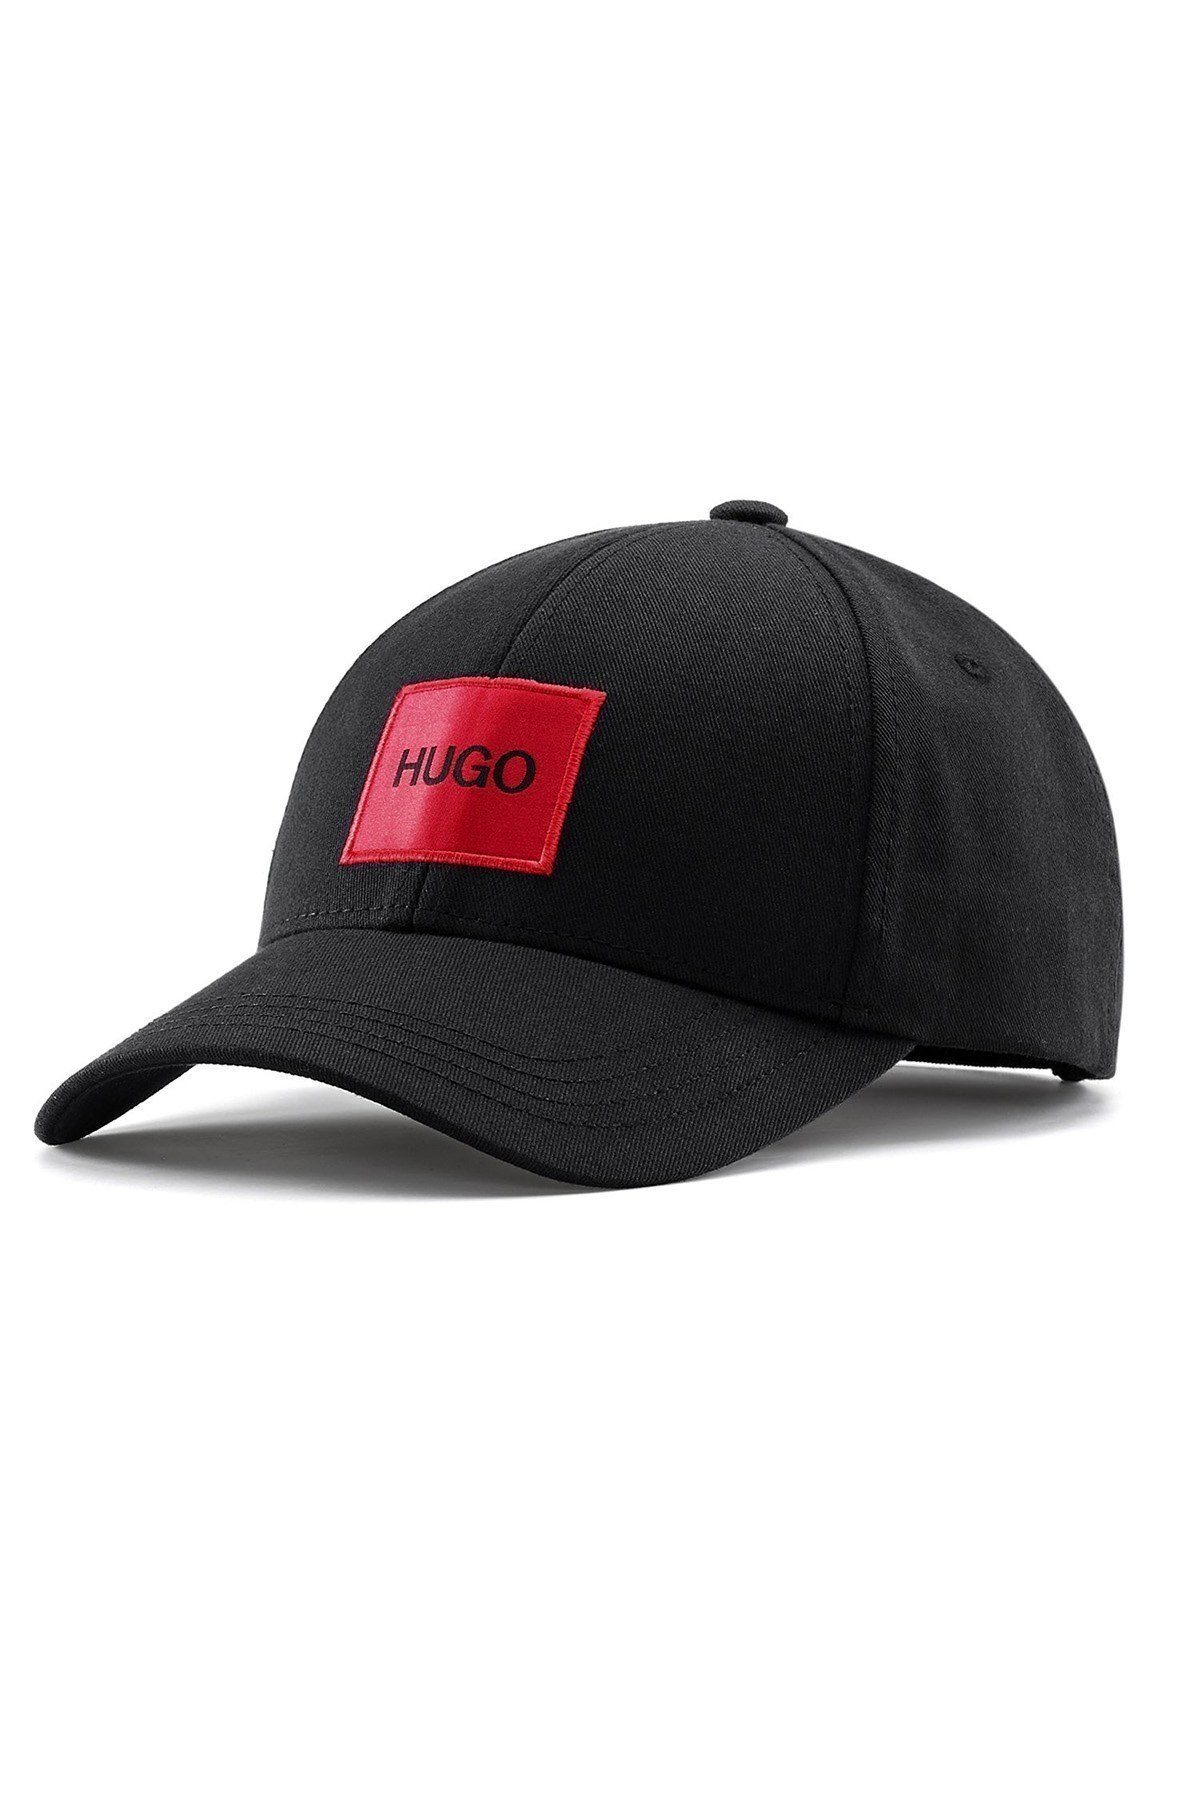 Hugo Boss % 100 Pamuklu Erkek Şapka 50449455 001 SİYAH